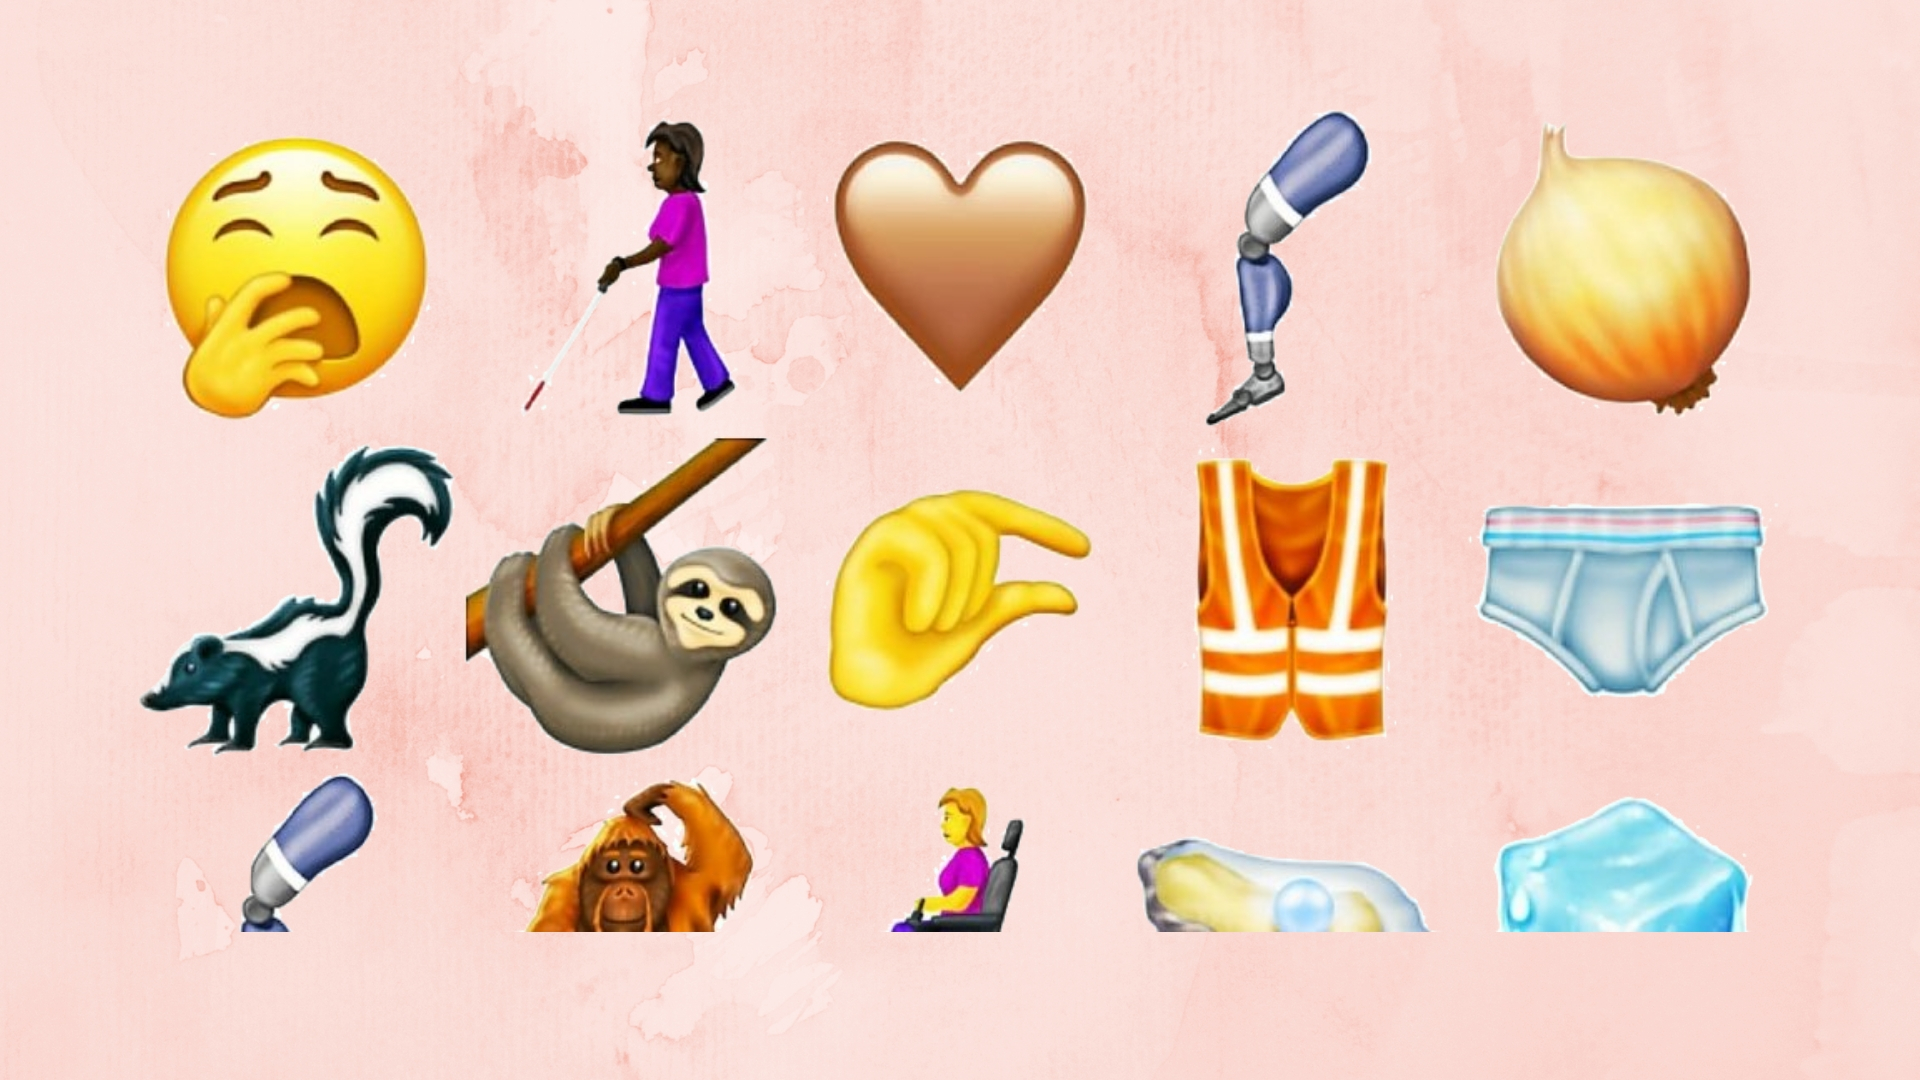 Découvrez ces nouveaux emojis qui font déjà parler d'eux sur Twitter